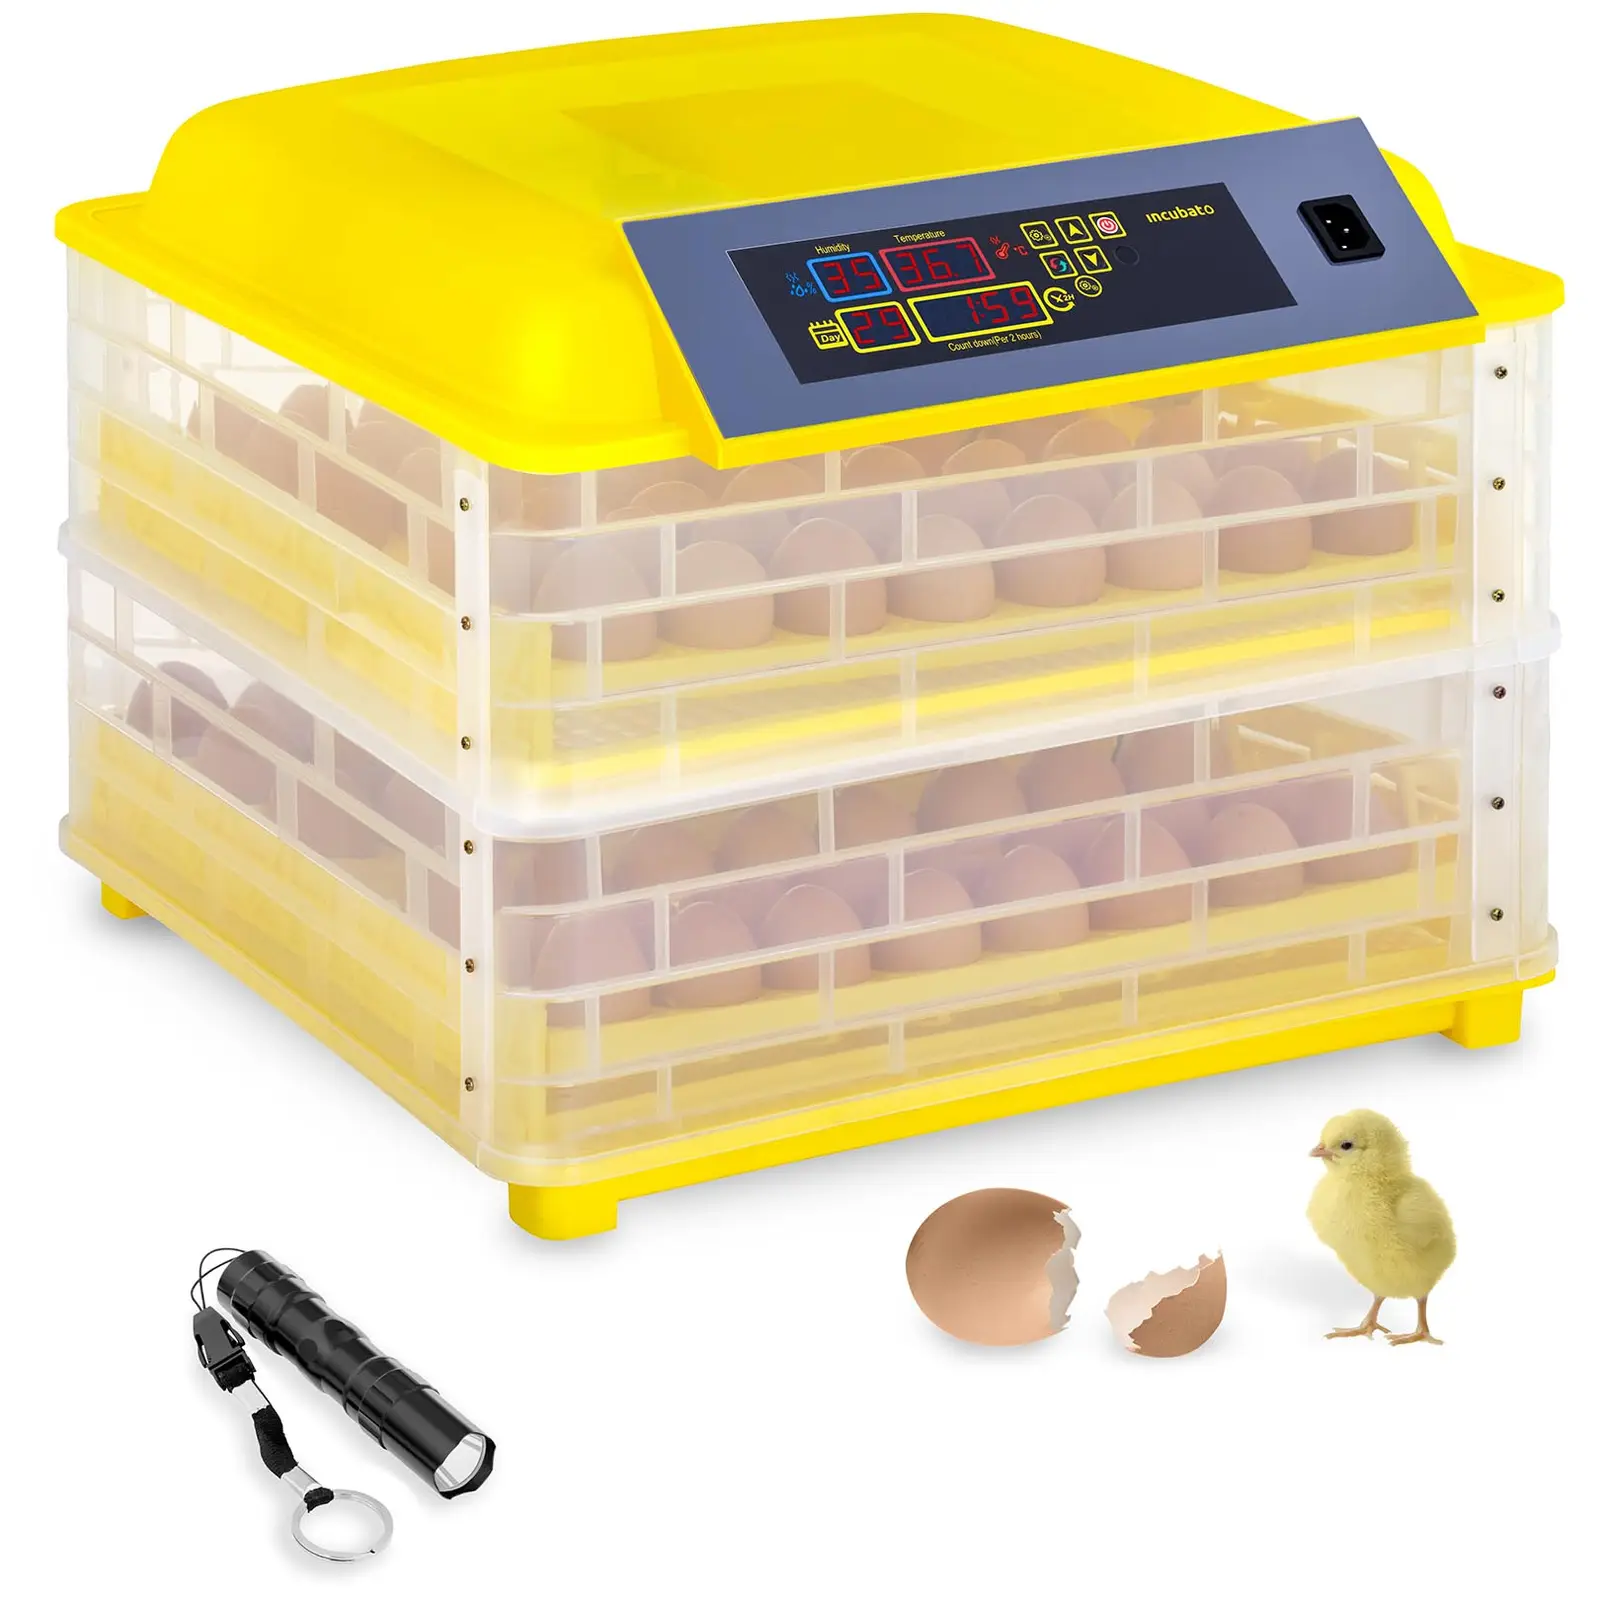 Incubatrice per uova professionale - 96 uova - lampada sperauova inclusa - completamente automatica